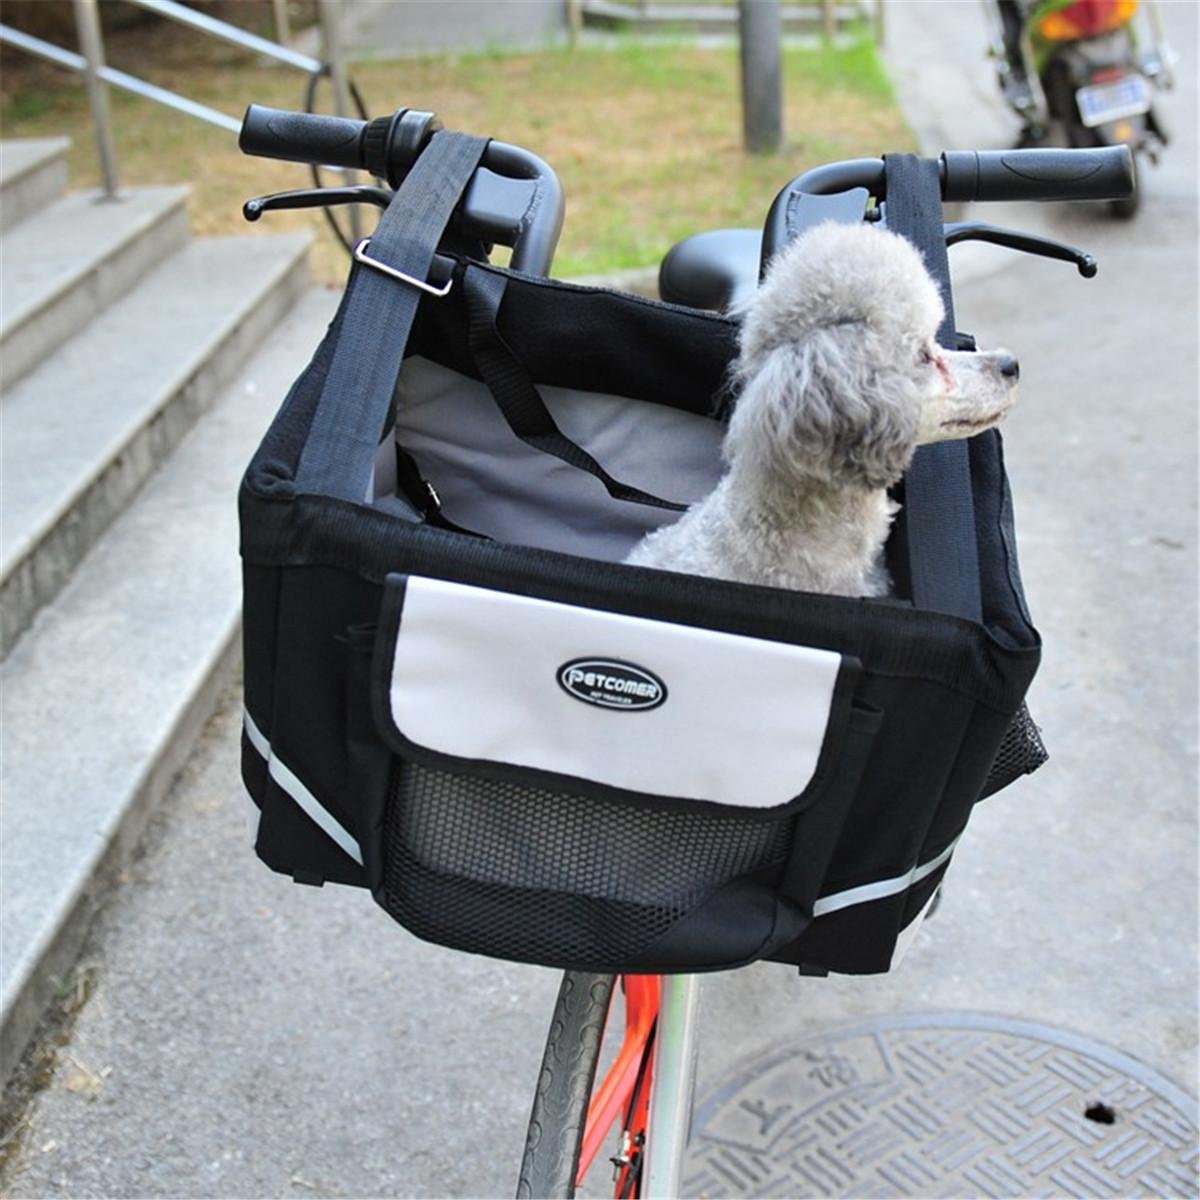 Travelin k9 Dog Bike Basket Carrier